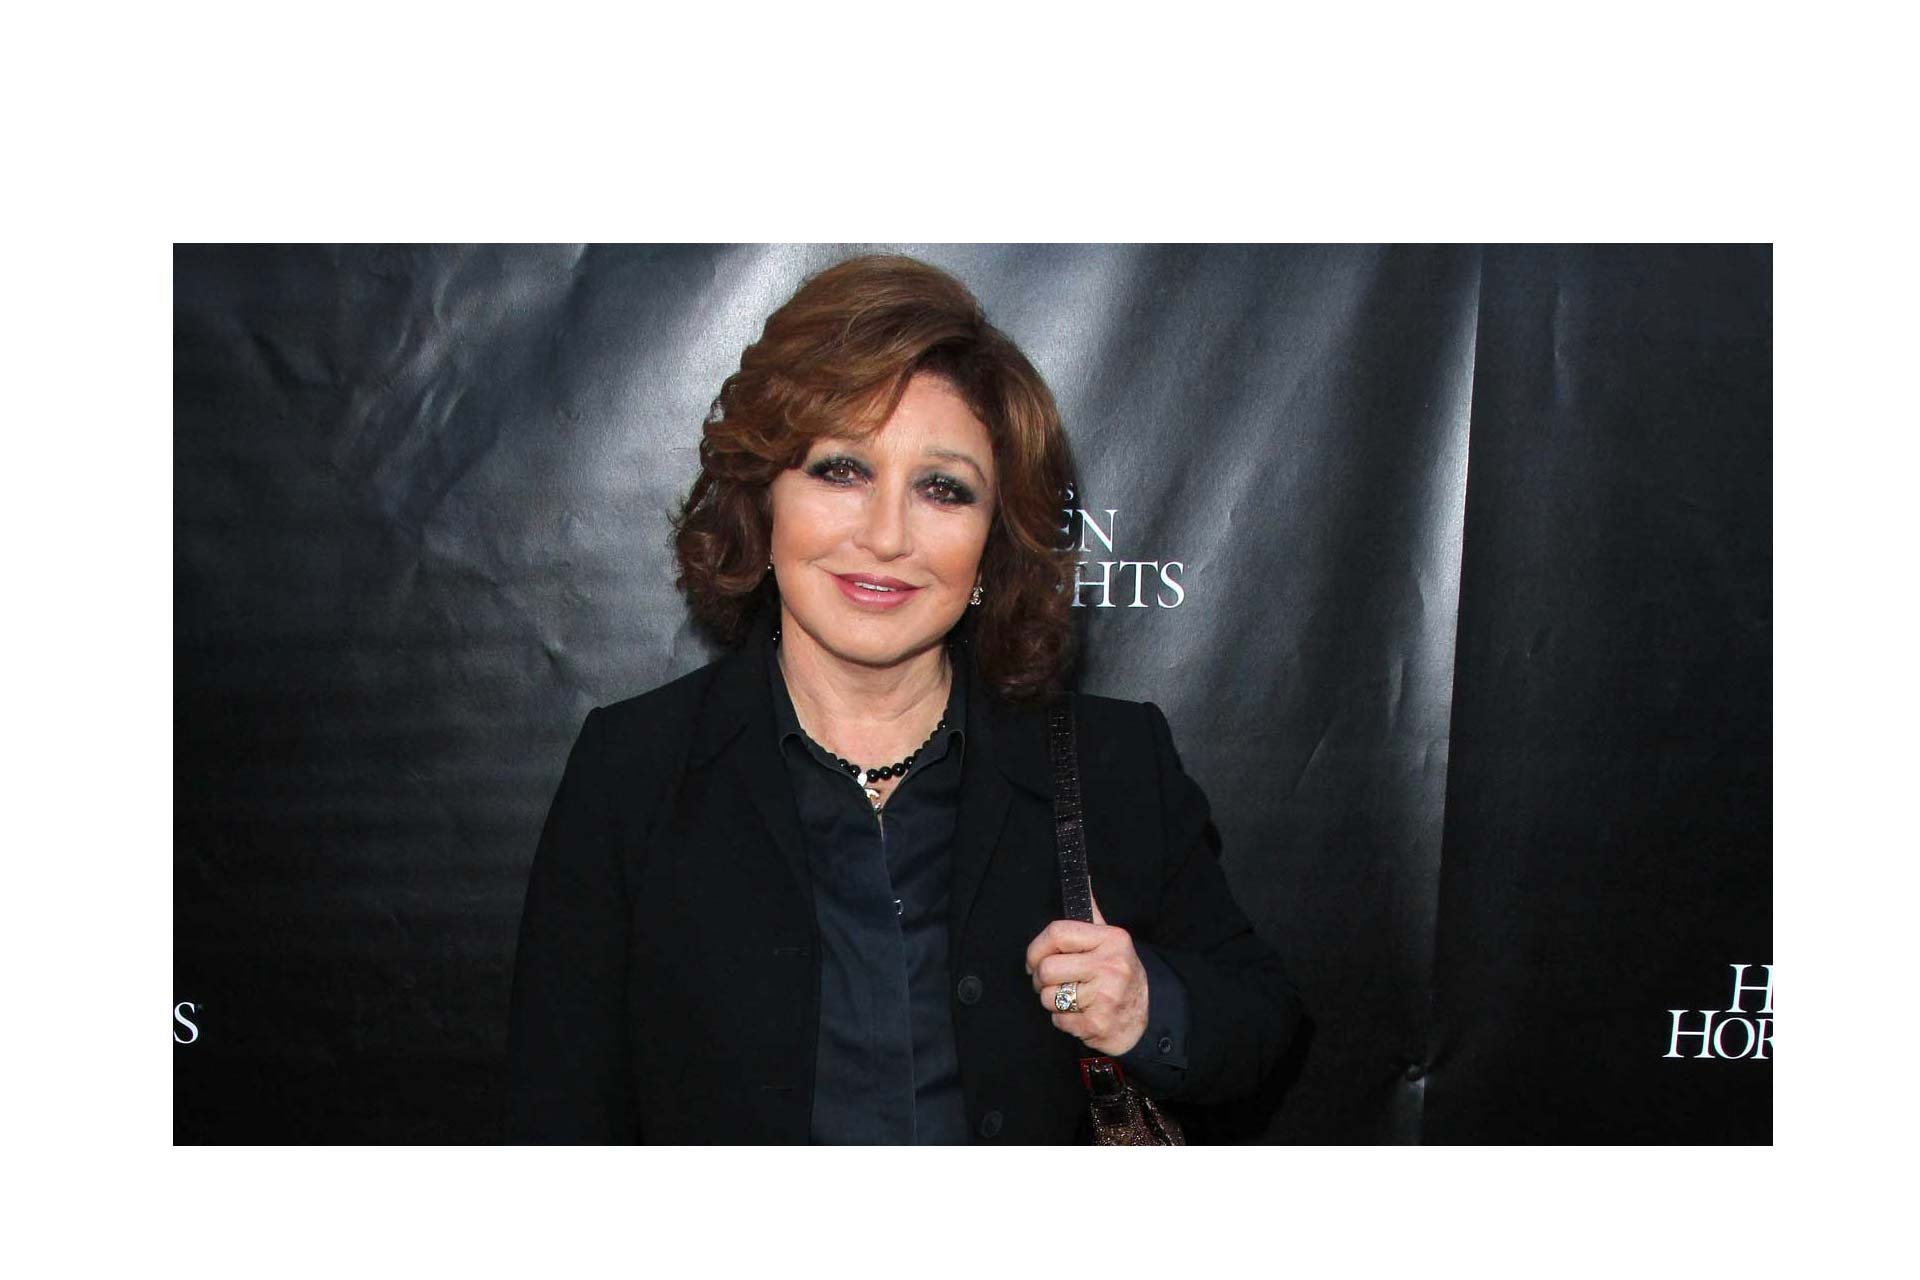 La cantante y actriz mexicana, que actuó en más de 50 películas, fue honrada en el Paseo de la Fama